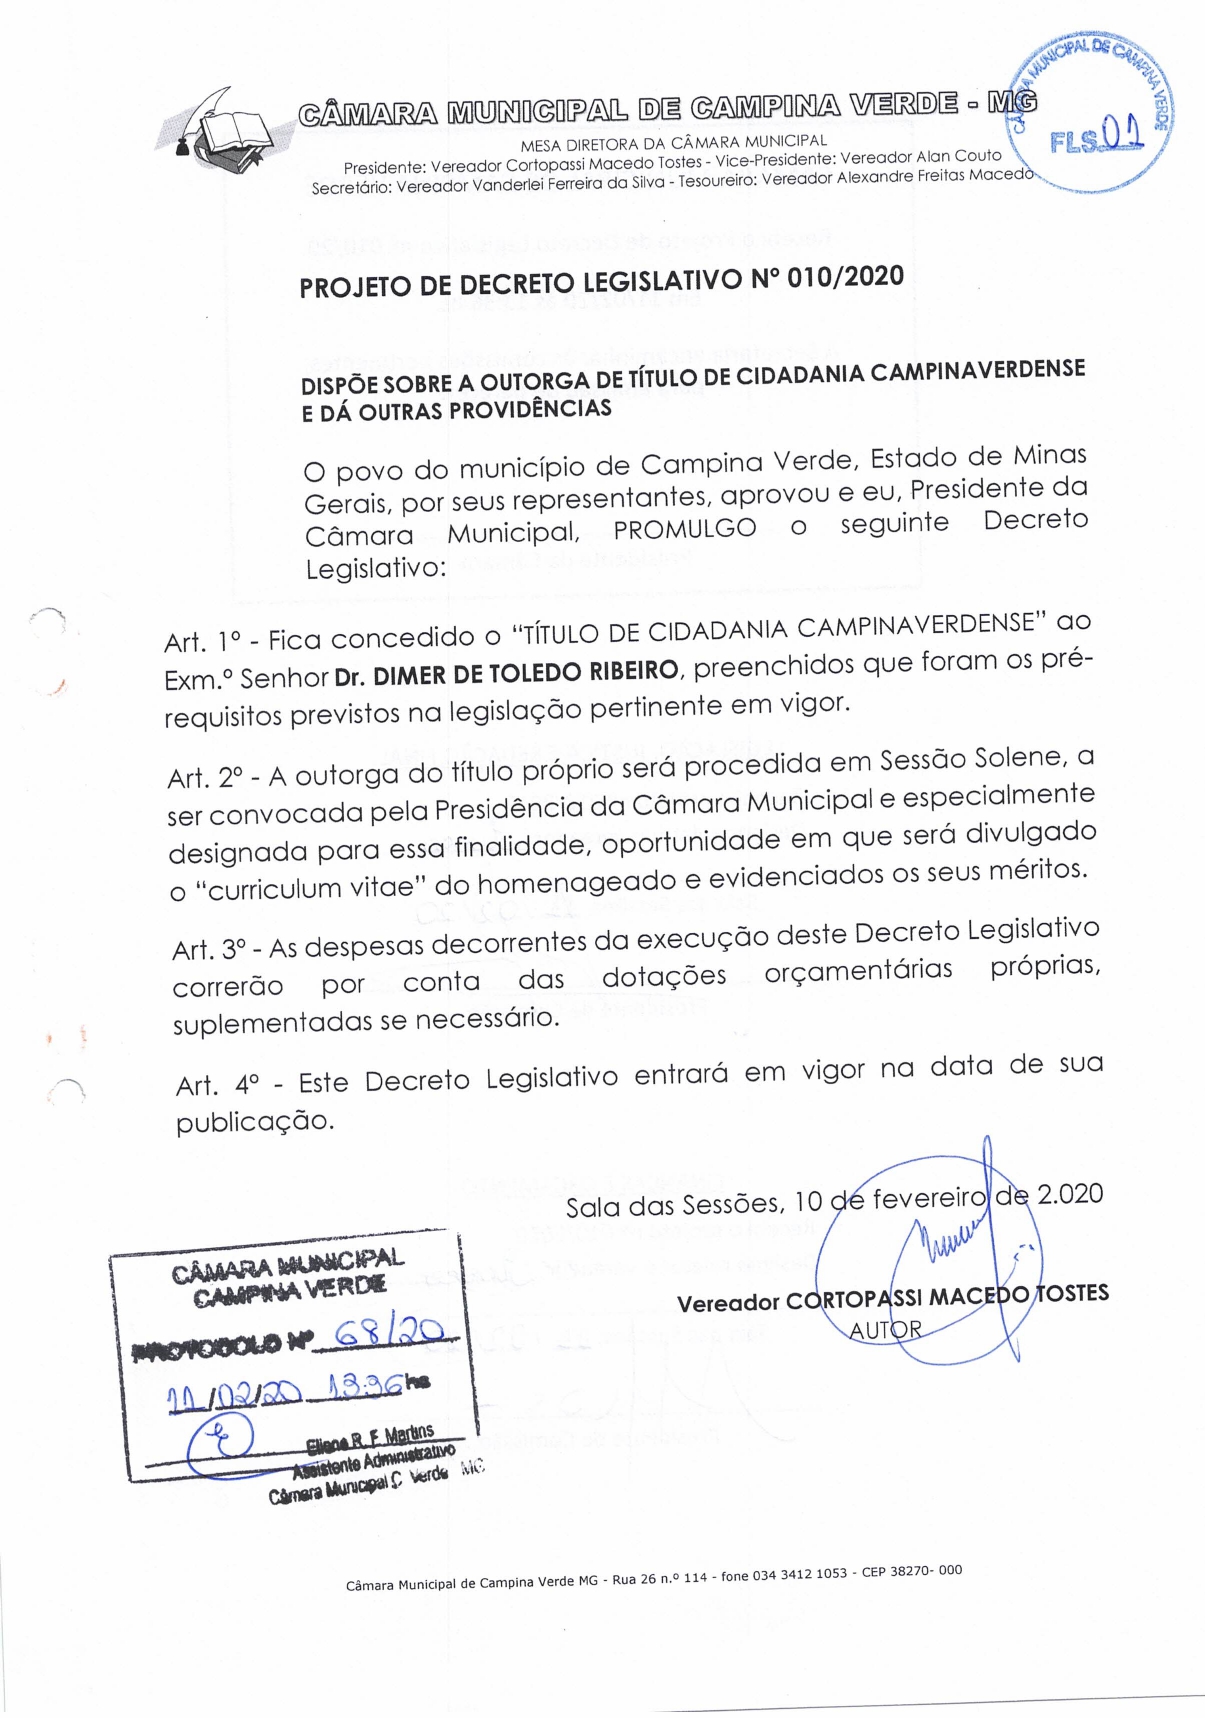 Decreto 010/2020 - “Título de cidadania Campinaverdense”